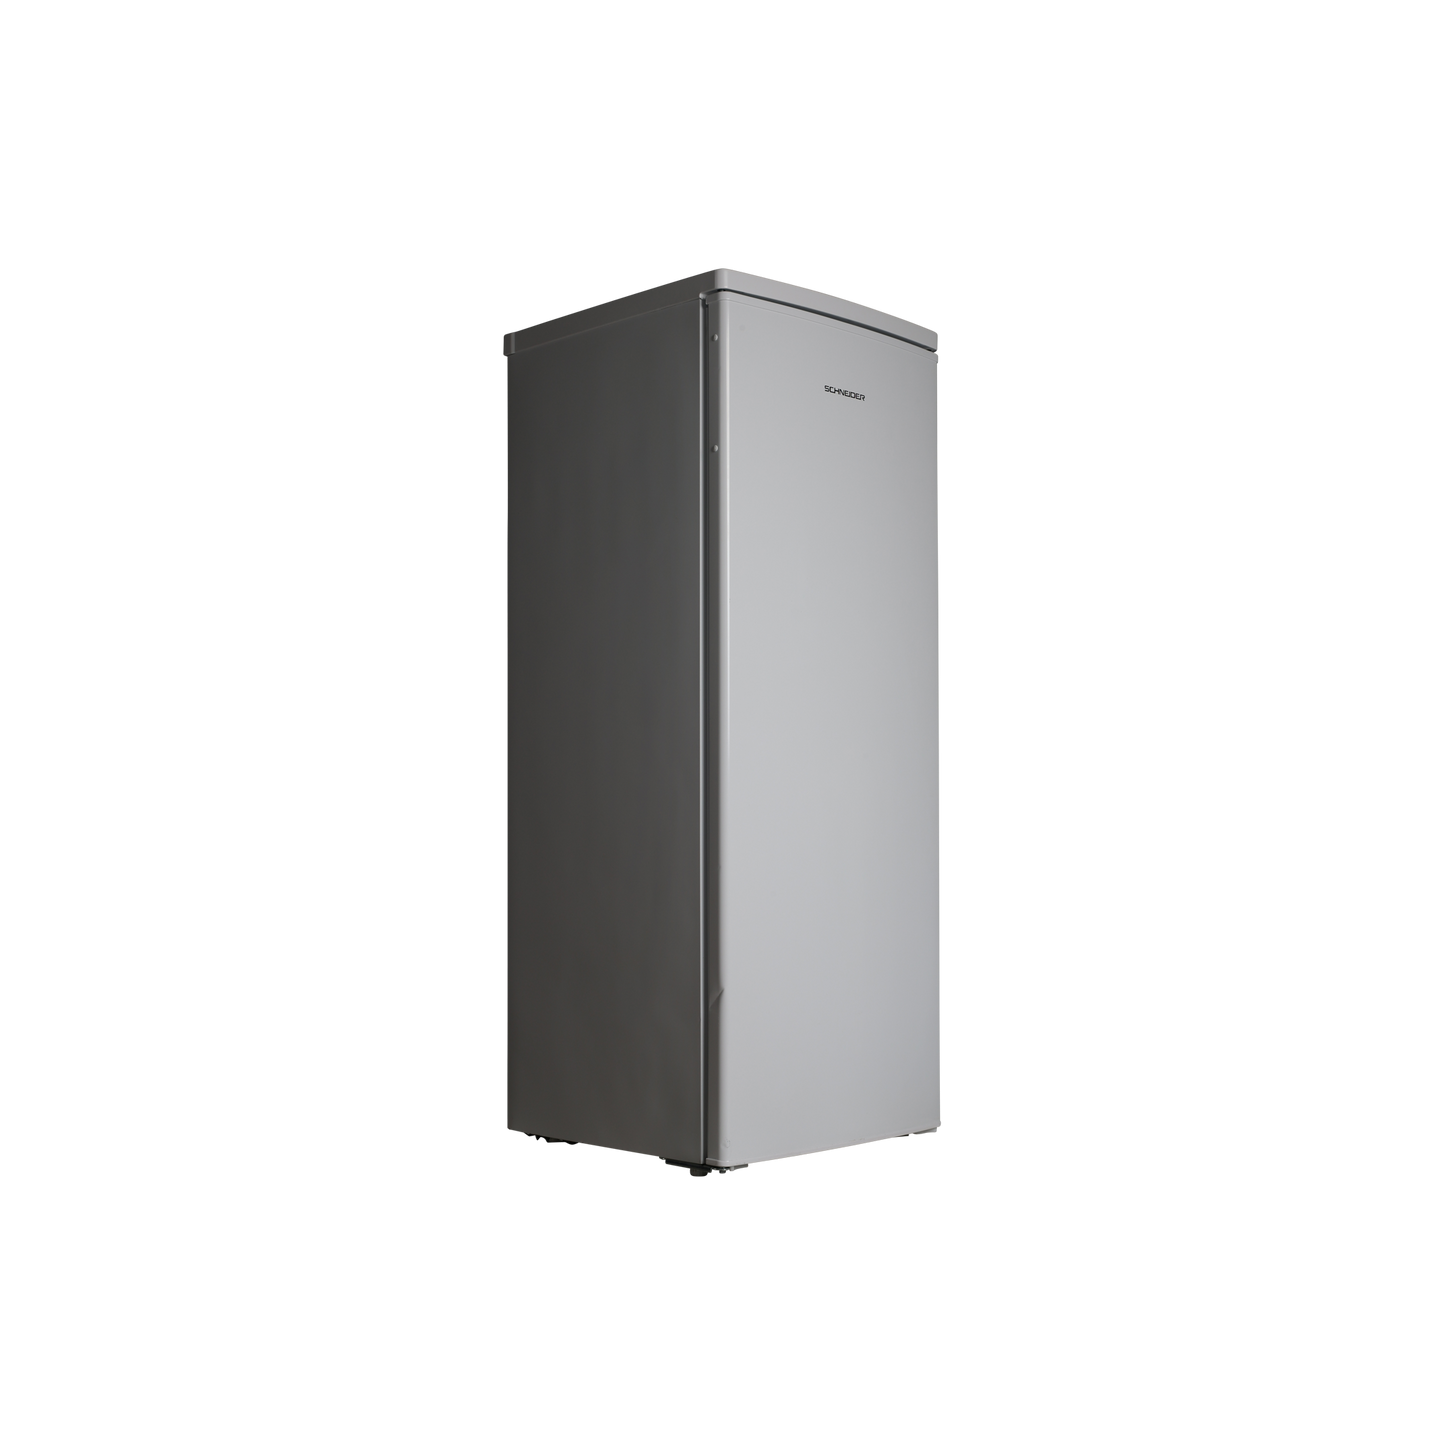 Réfrigérateur Avec Congélateur 219 L Reconditionné SCHNEIDER SCOD219W : vue du côté gauche